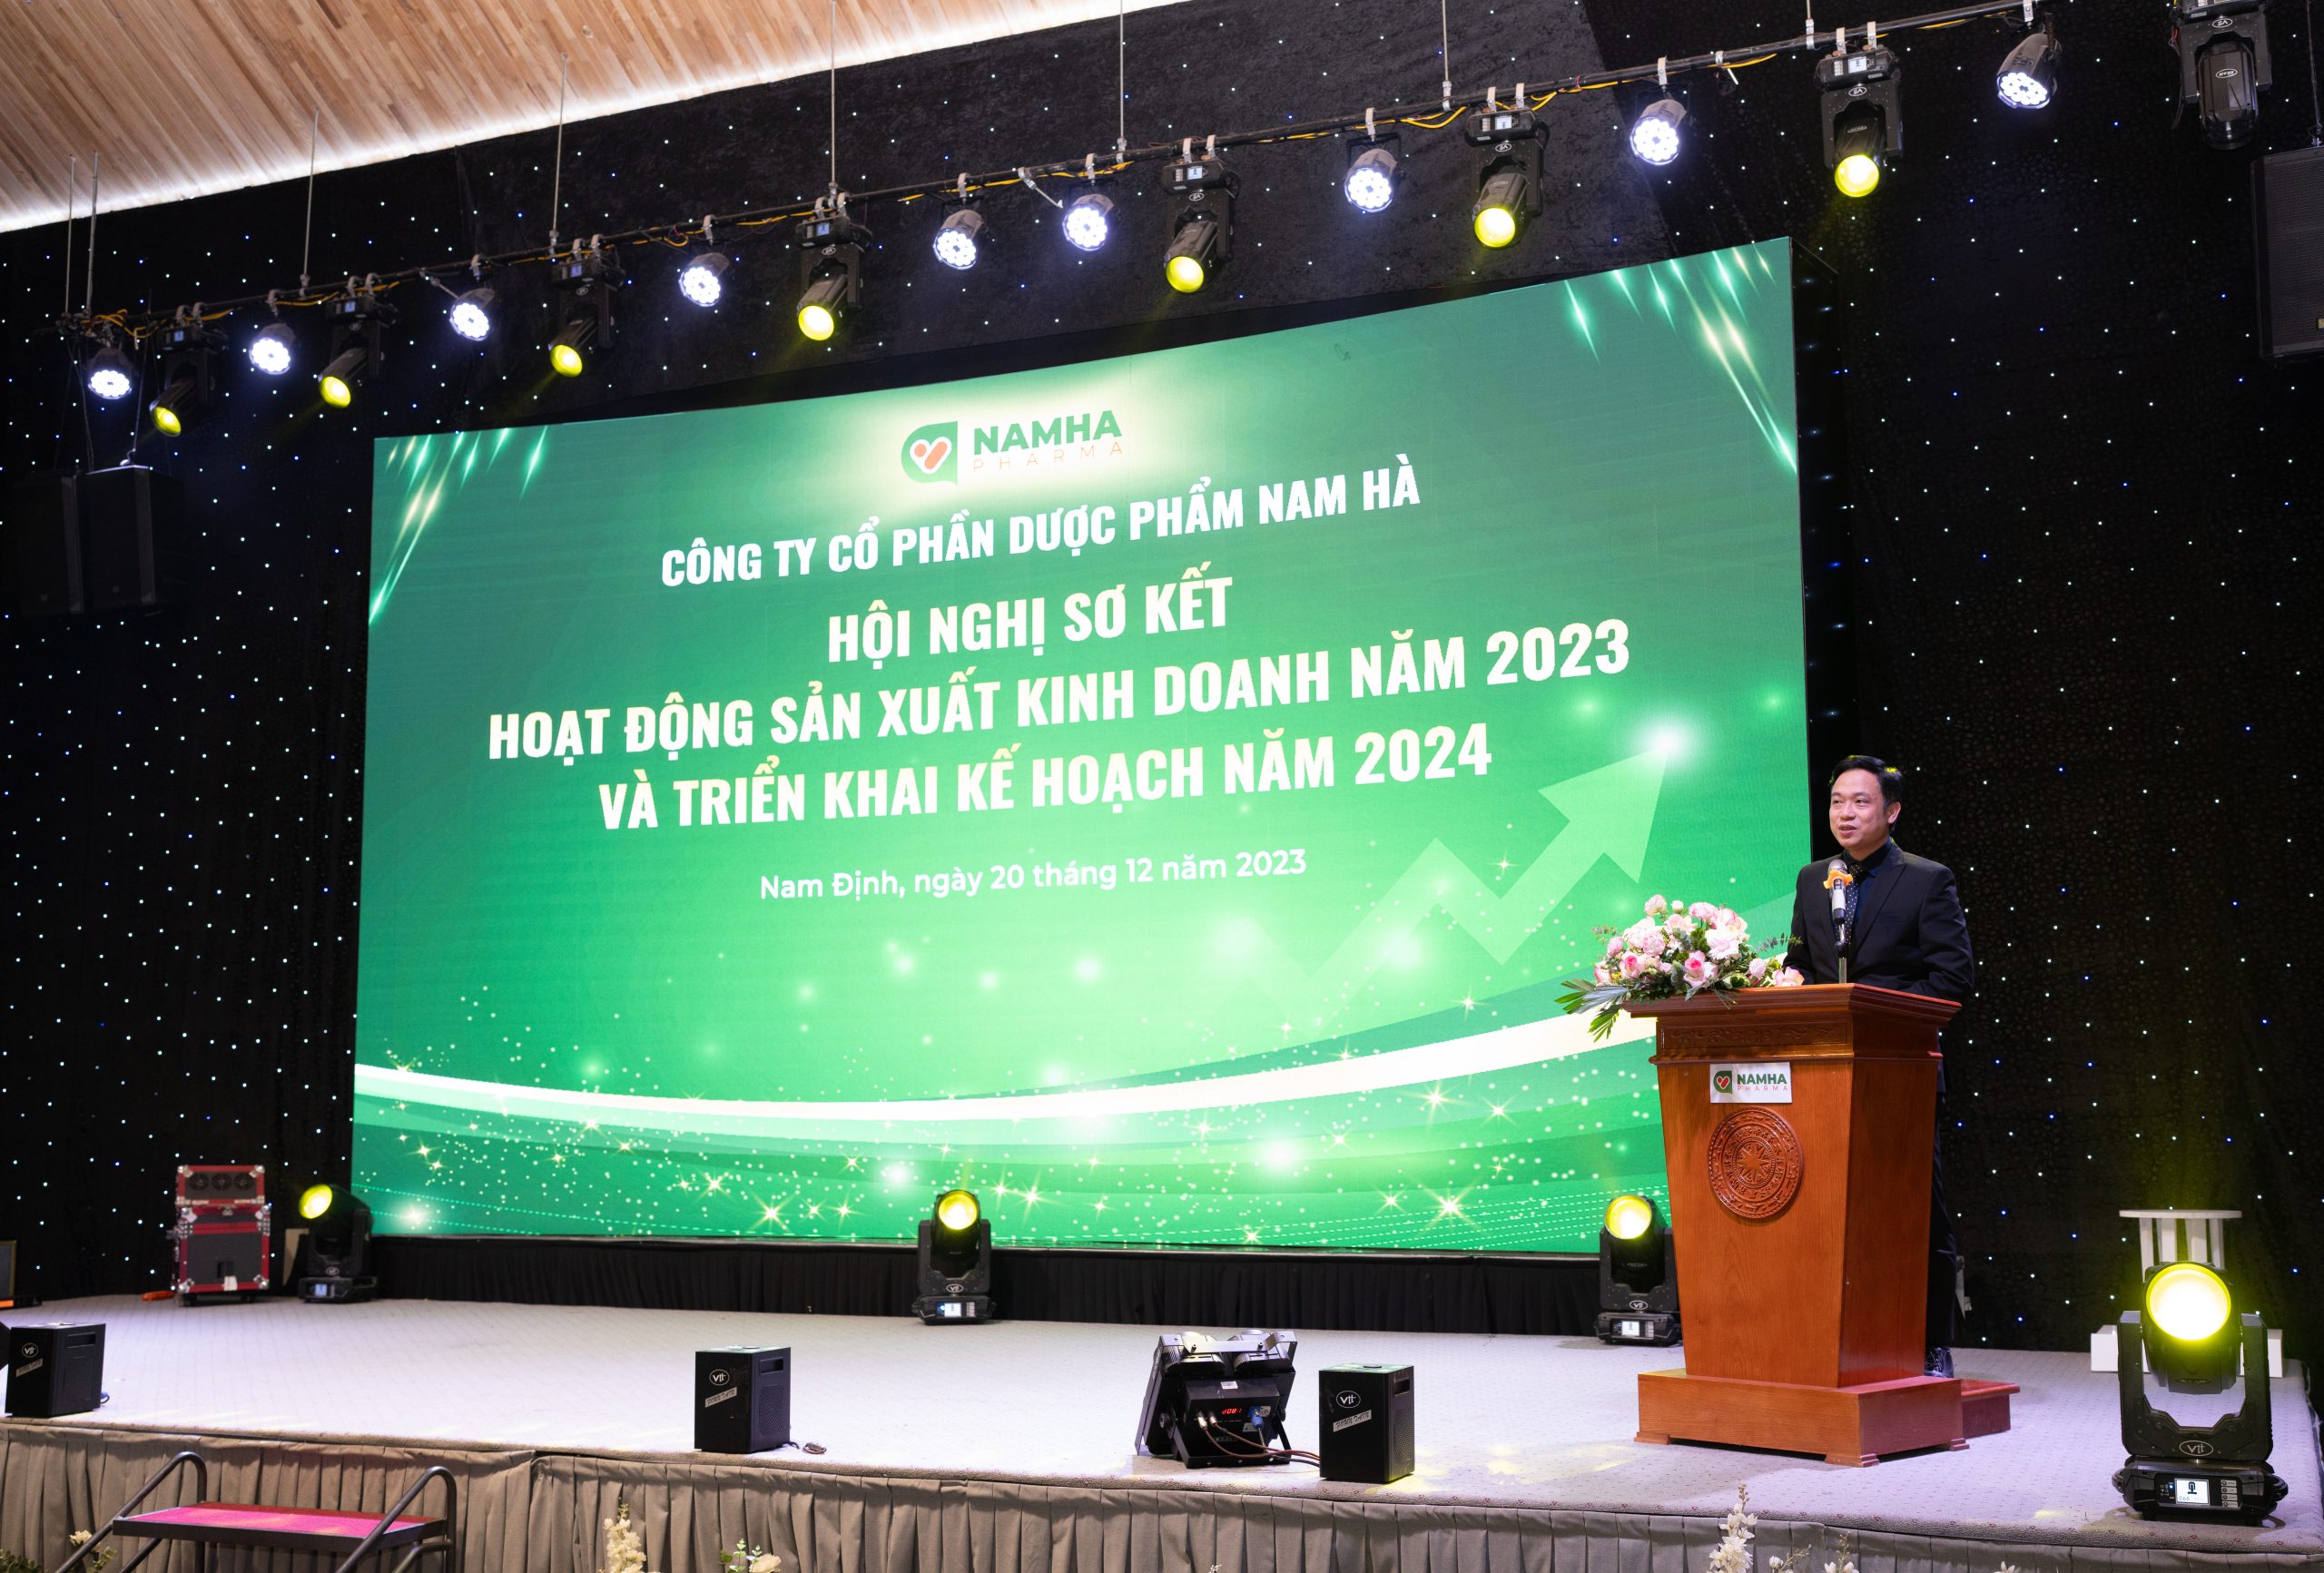 Hội nghị Sơ kết hoạt động SXKD năm 2023 và triển khai kế hoạch năm 2024 của Dược Nam Hà diễn ra thành công 